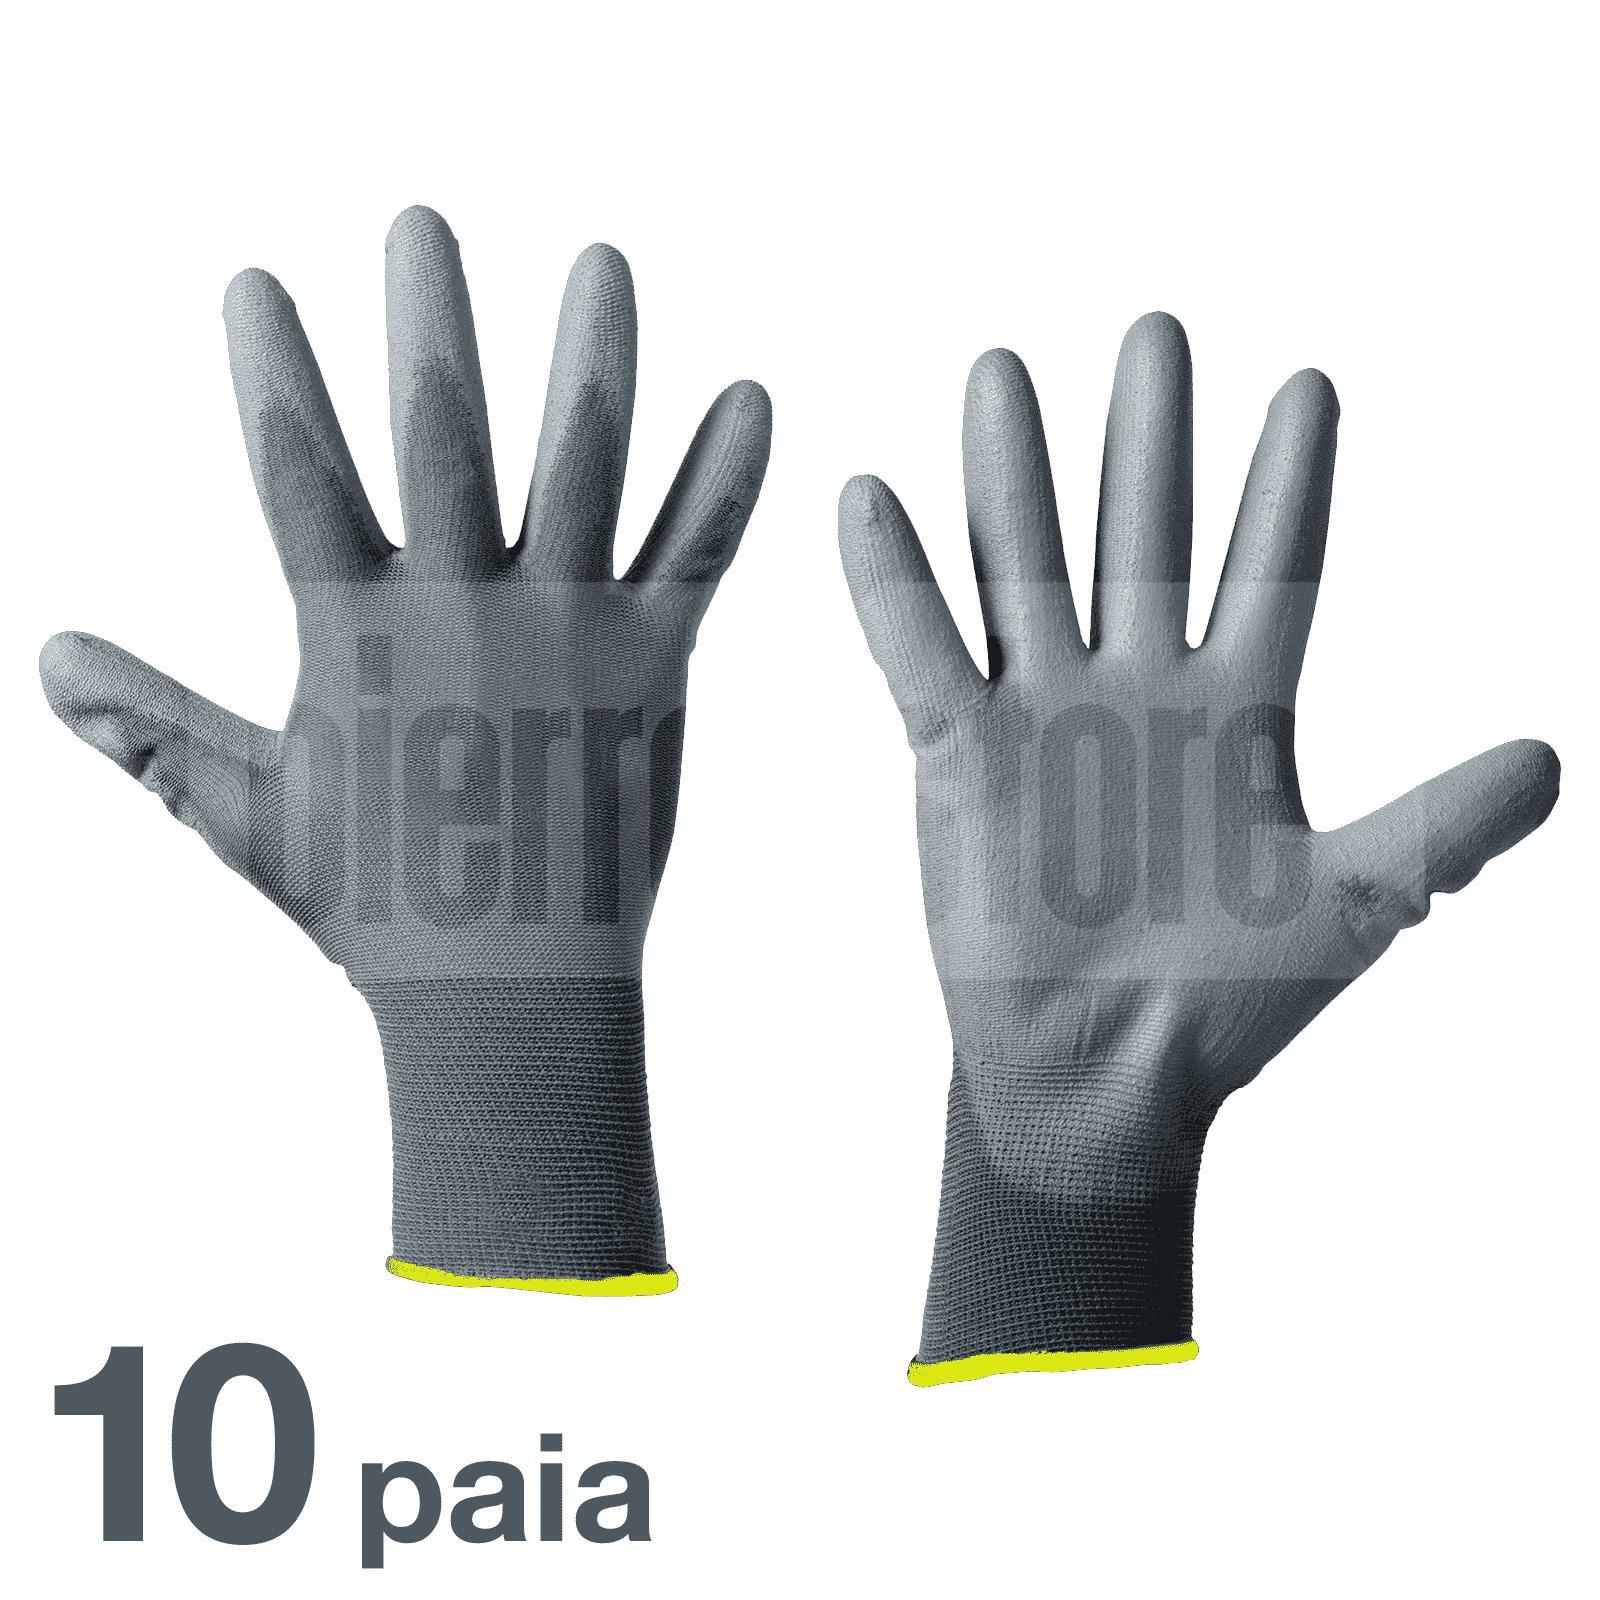 bracaglia guanti da lavoro in poliuretano spalmato tg. 10 - 10 paia